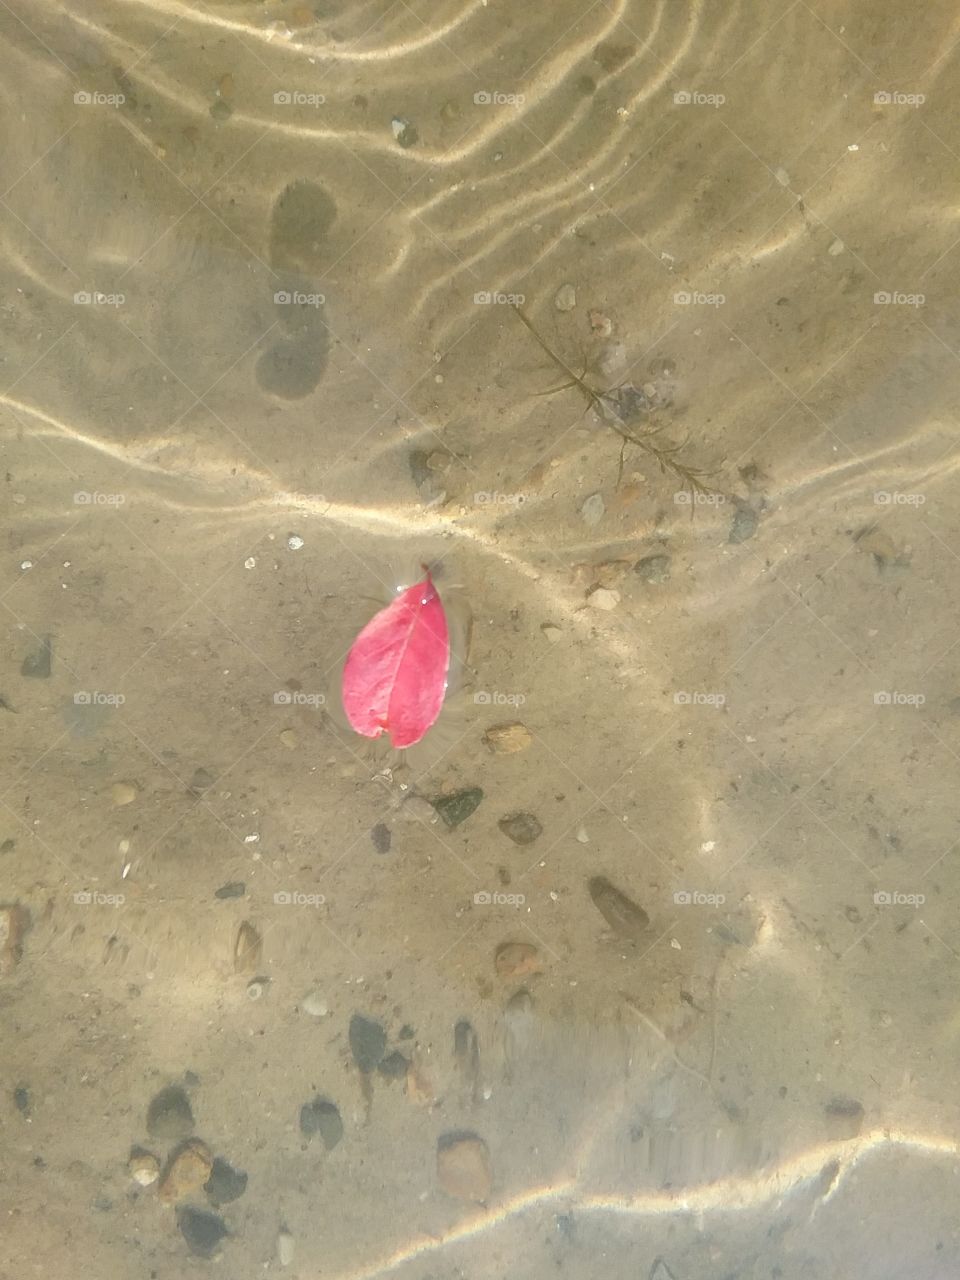 heart shaped leaf-I love water